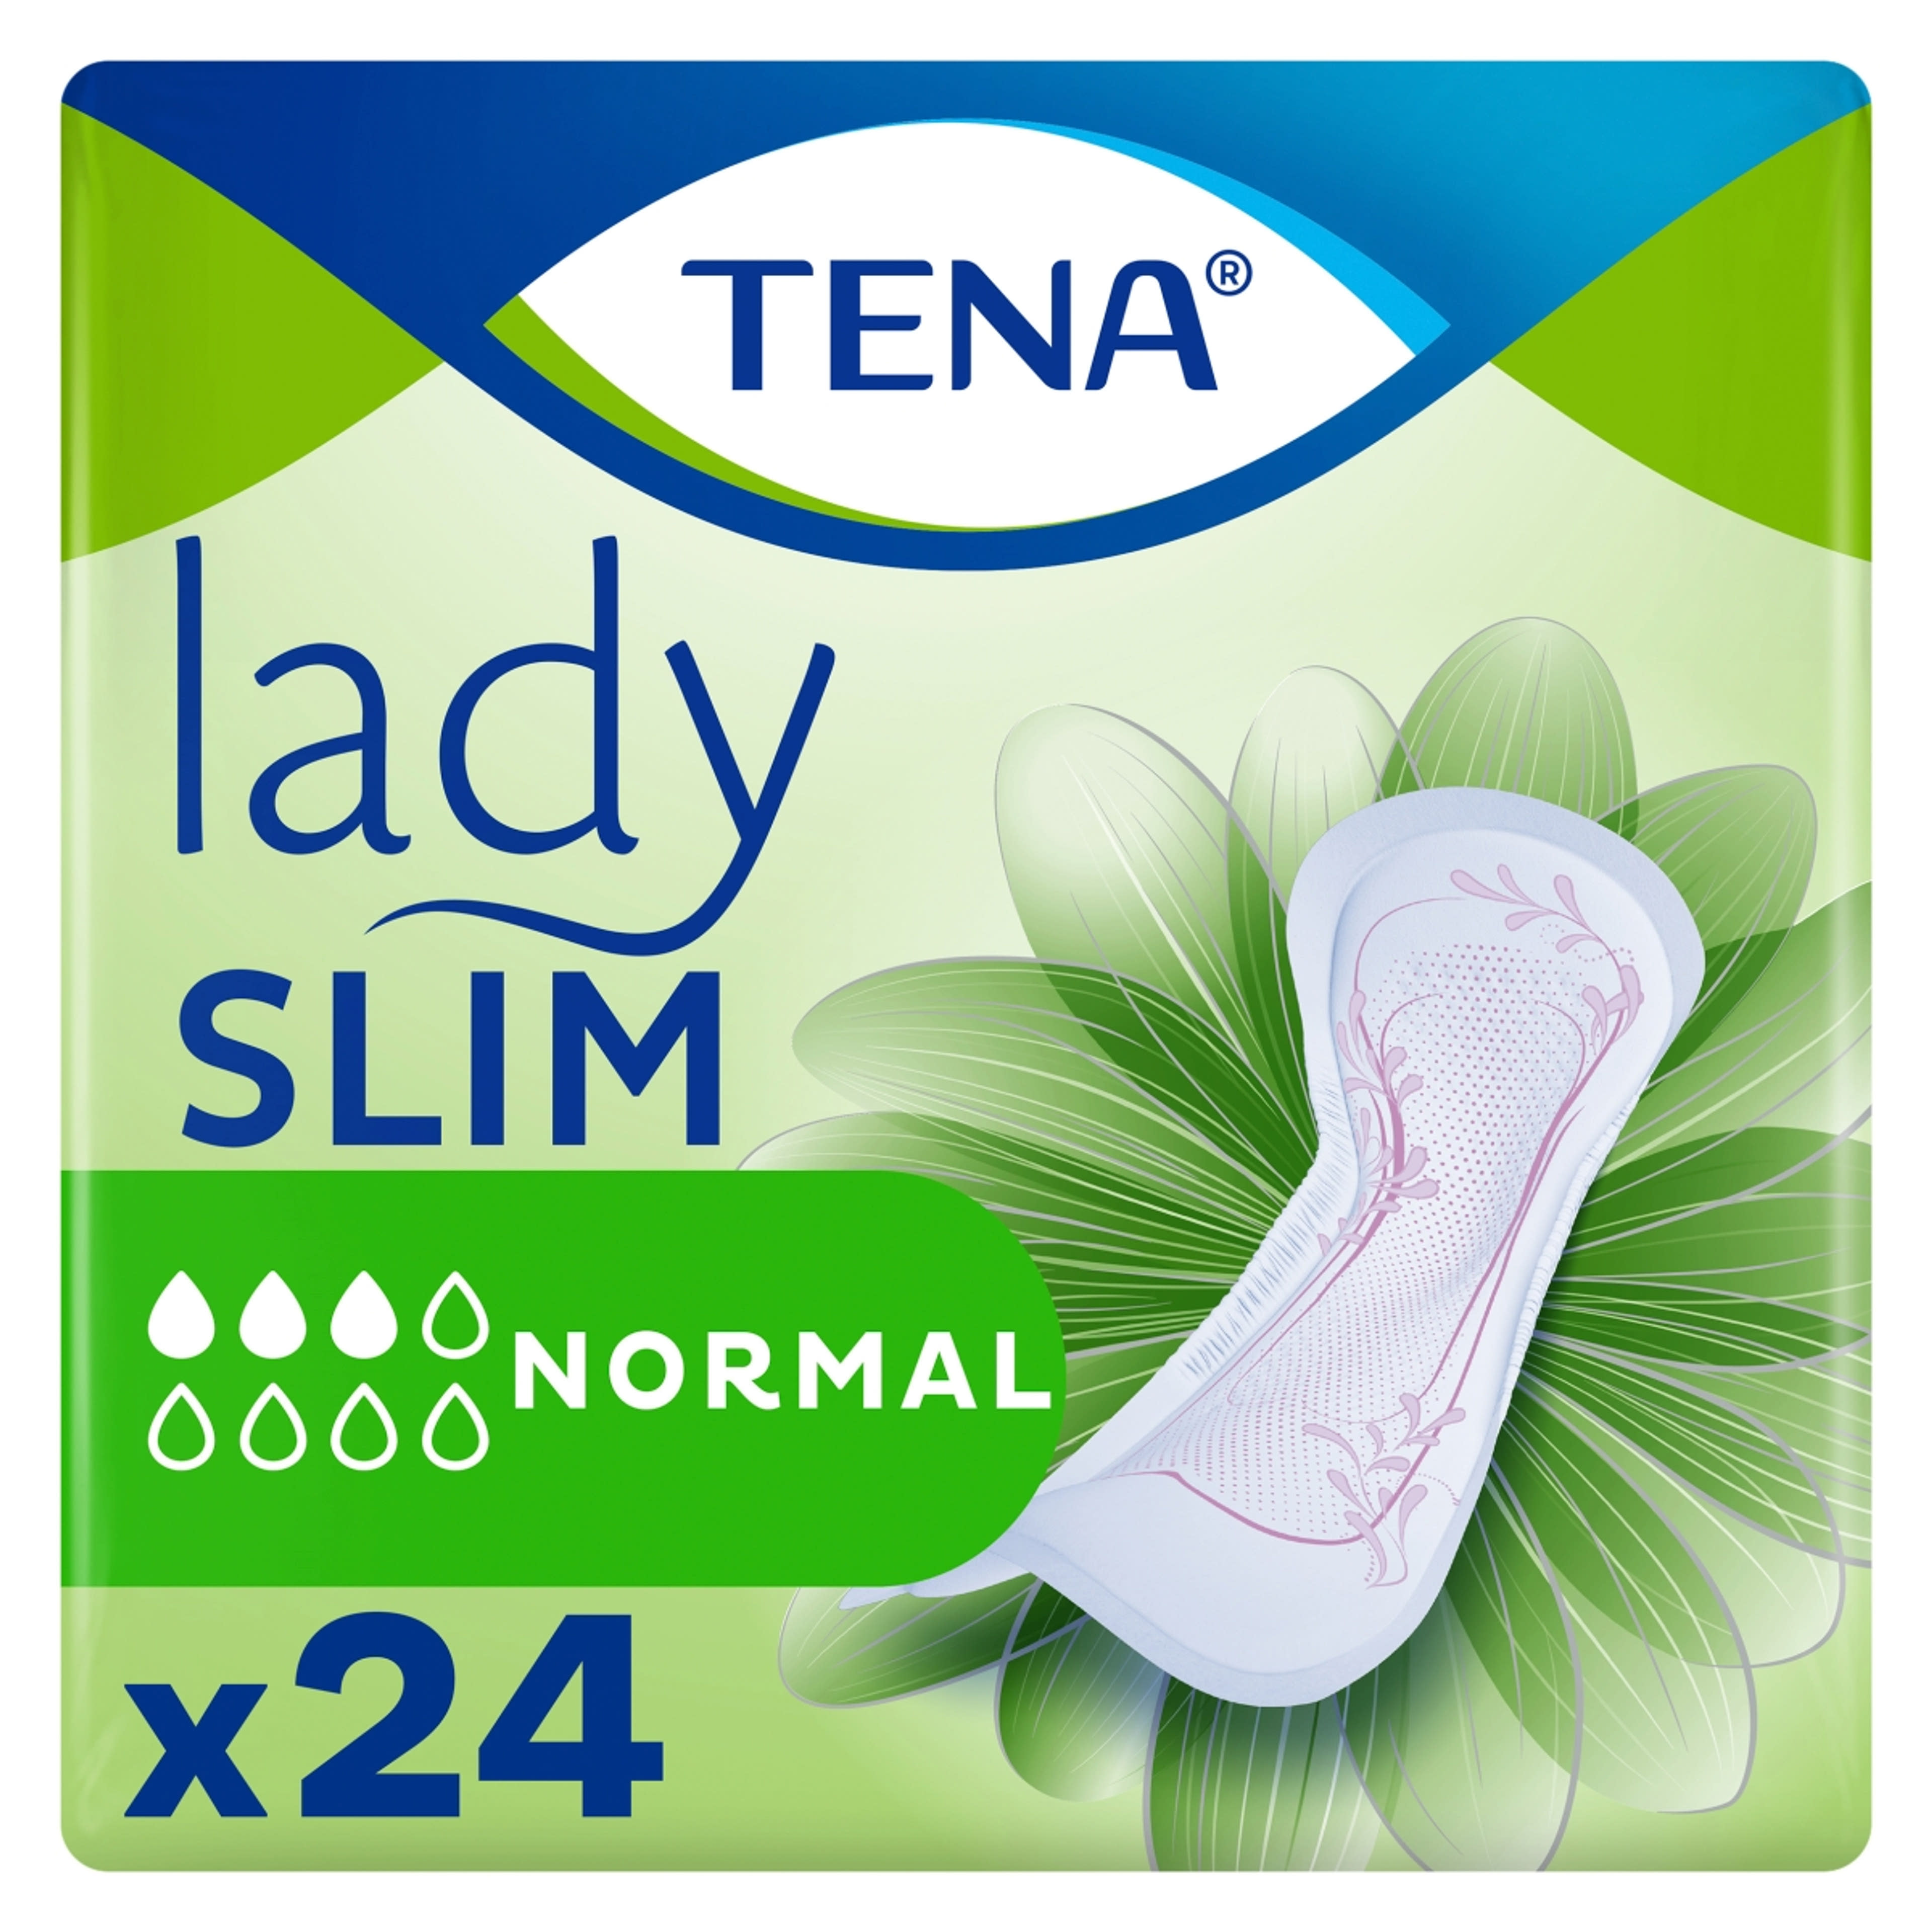 Tena lady slim normál inkontinencia betét - 24 db-3